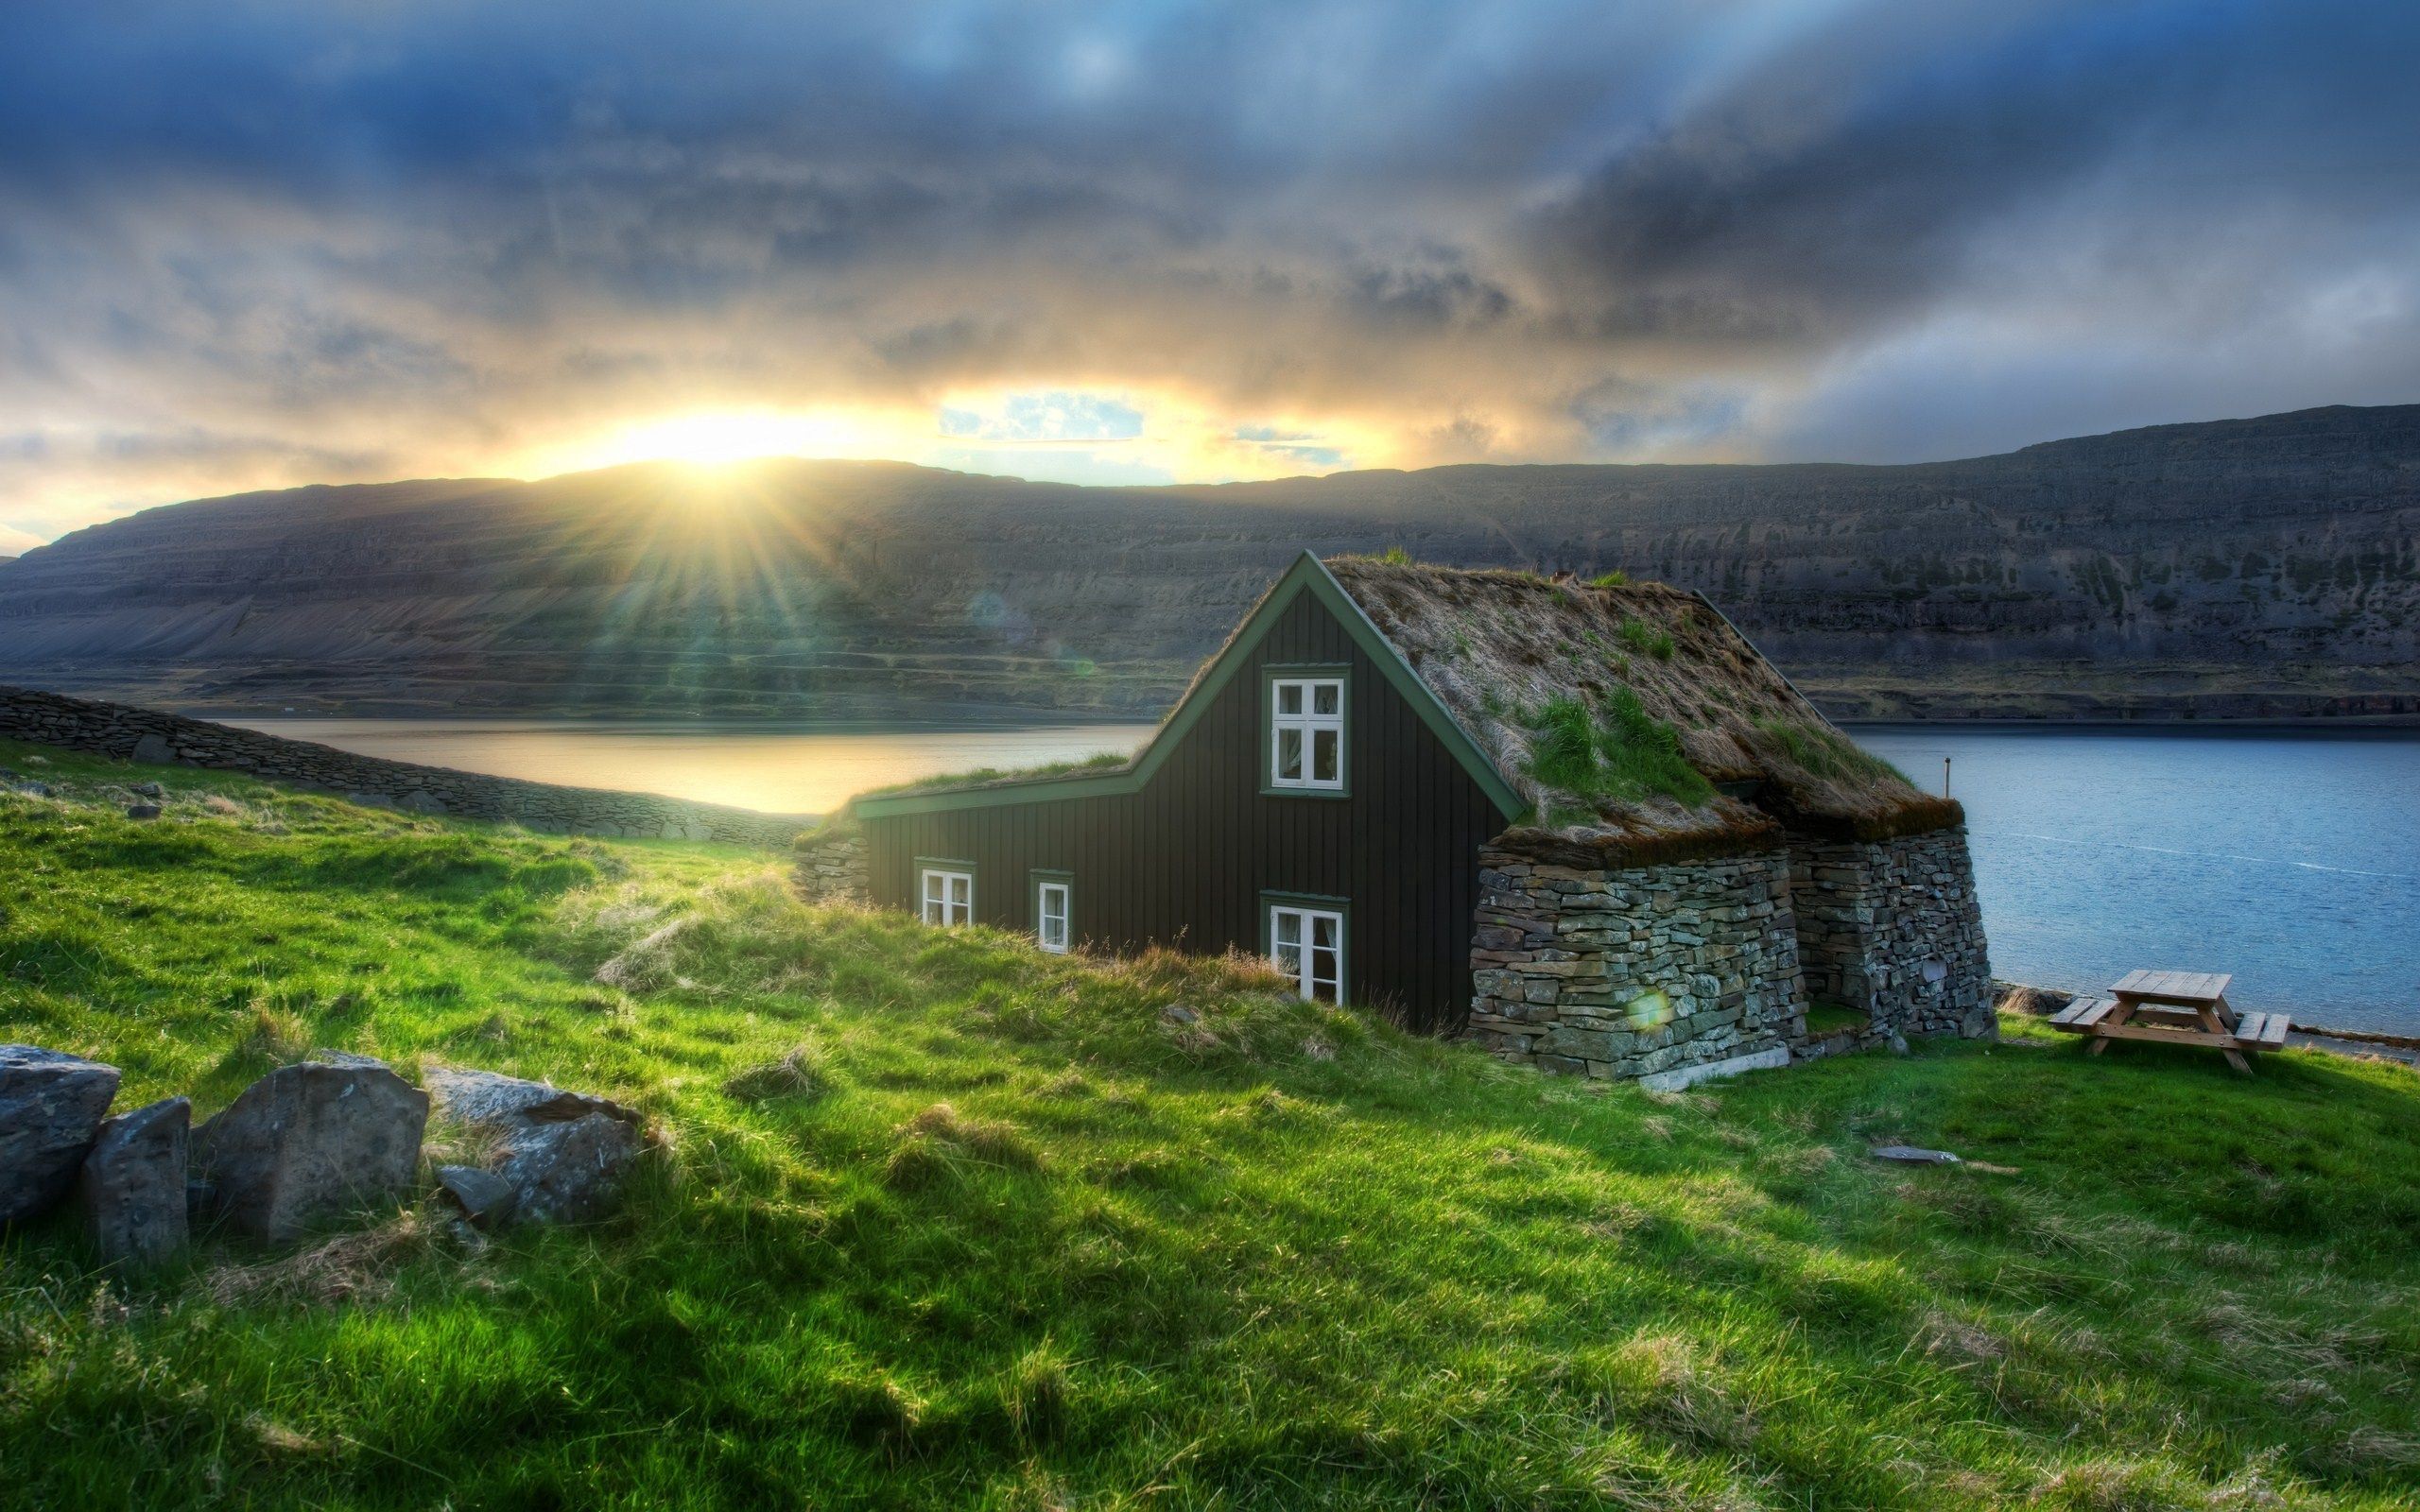 Hình ảnh, miễn phí, desktop - Đây là bộ sưu tập hình ảnh đẹp nhất của Iceland, bạn có thể tải về miễn phí và sử dụng như bộ hình nền tuyệt vời cho desktop của mình. Bạn sẽ không muốn bỏ qua các hình ảnh tuyệt đẹp này, đảm bảo sẽ đem đến một trải nghiệm tuyệt vời cho bạn và cộng đồng của bạn.